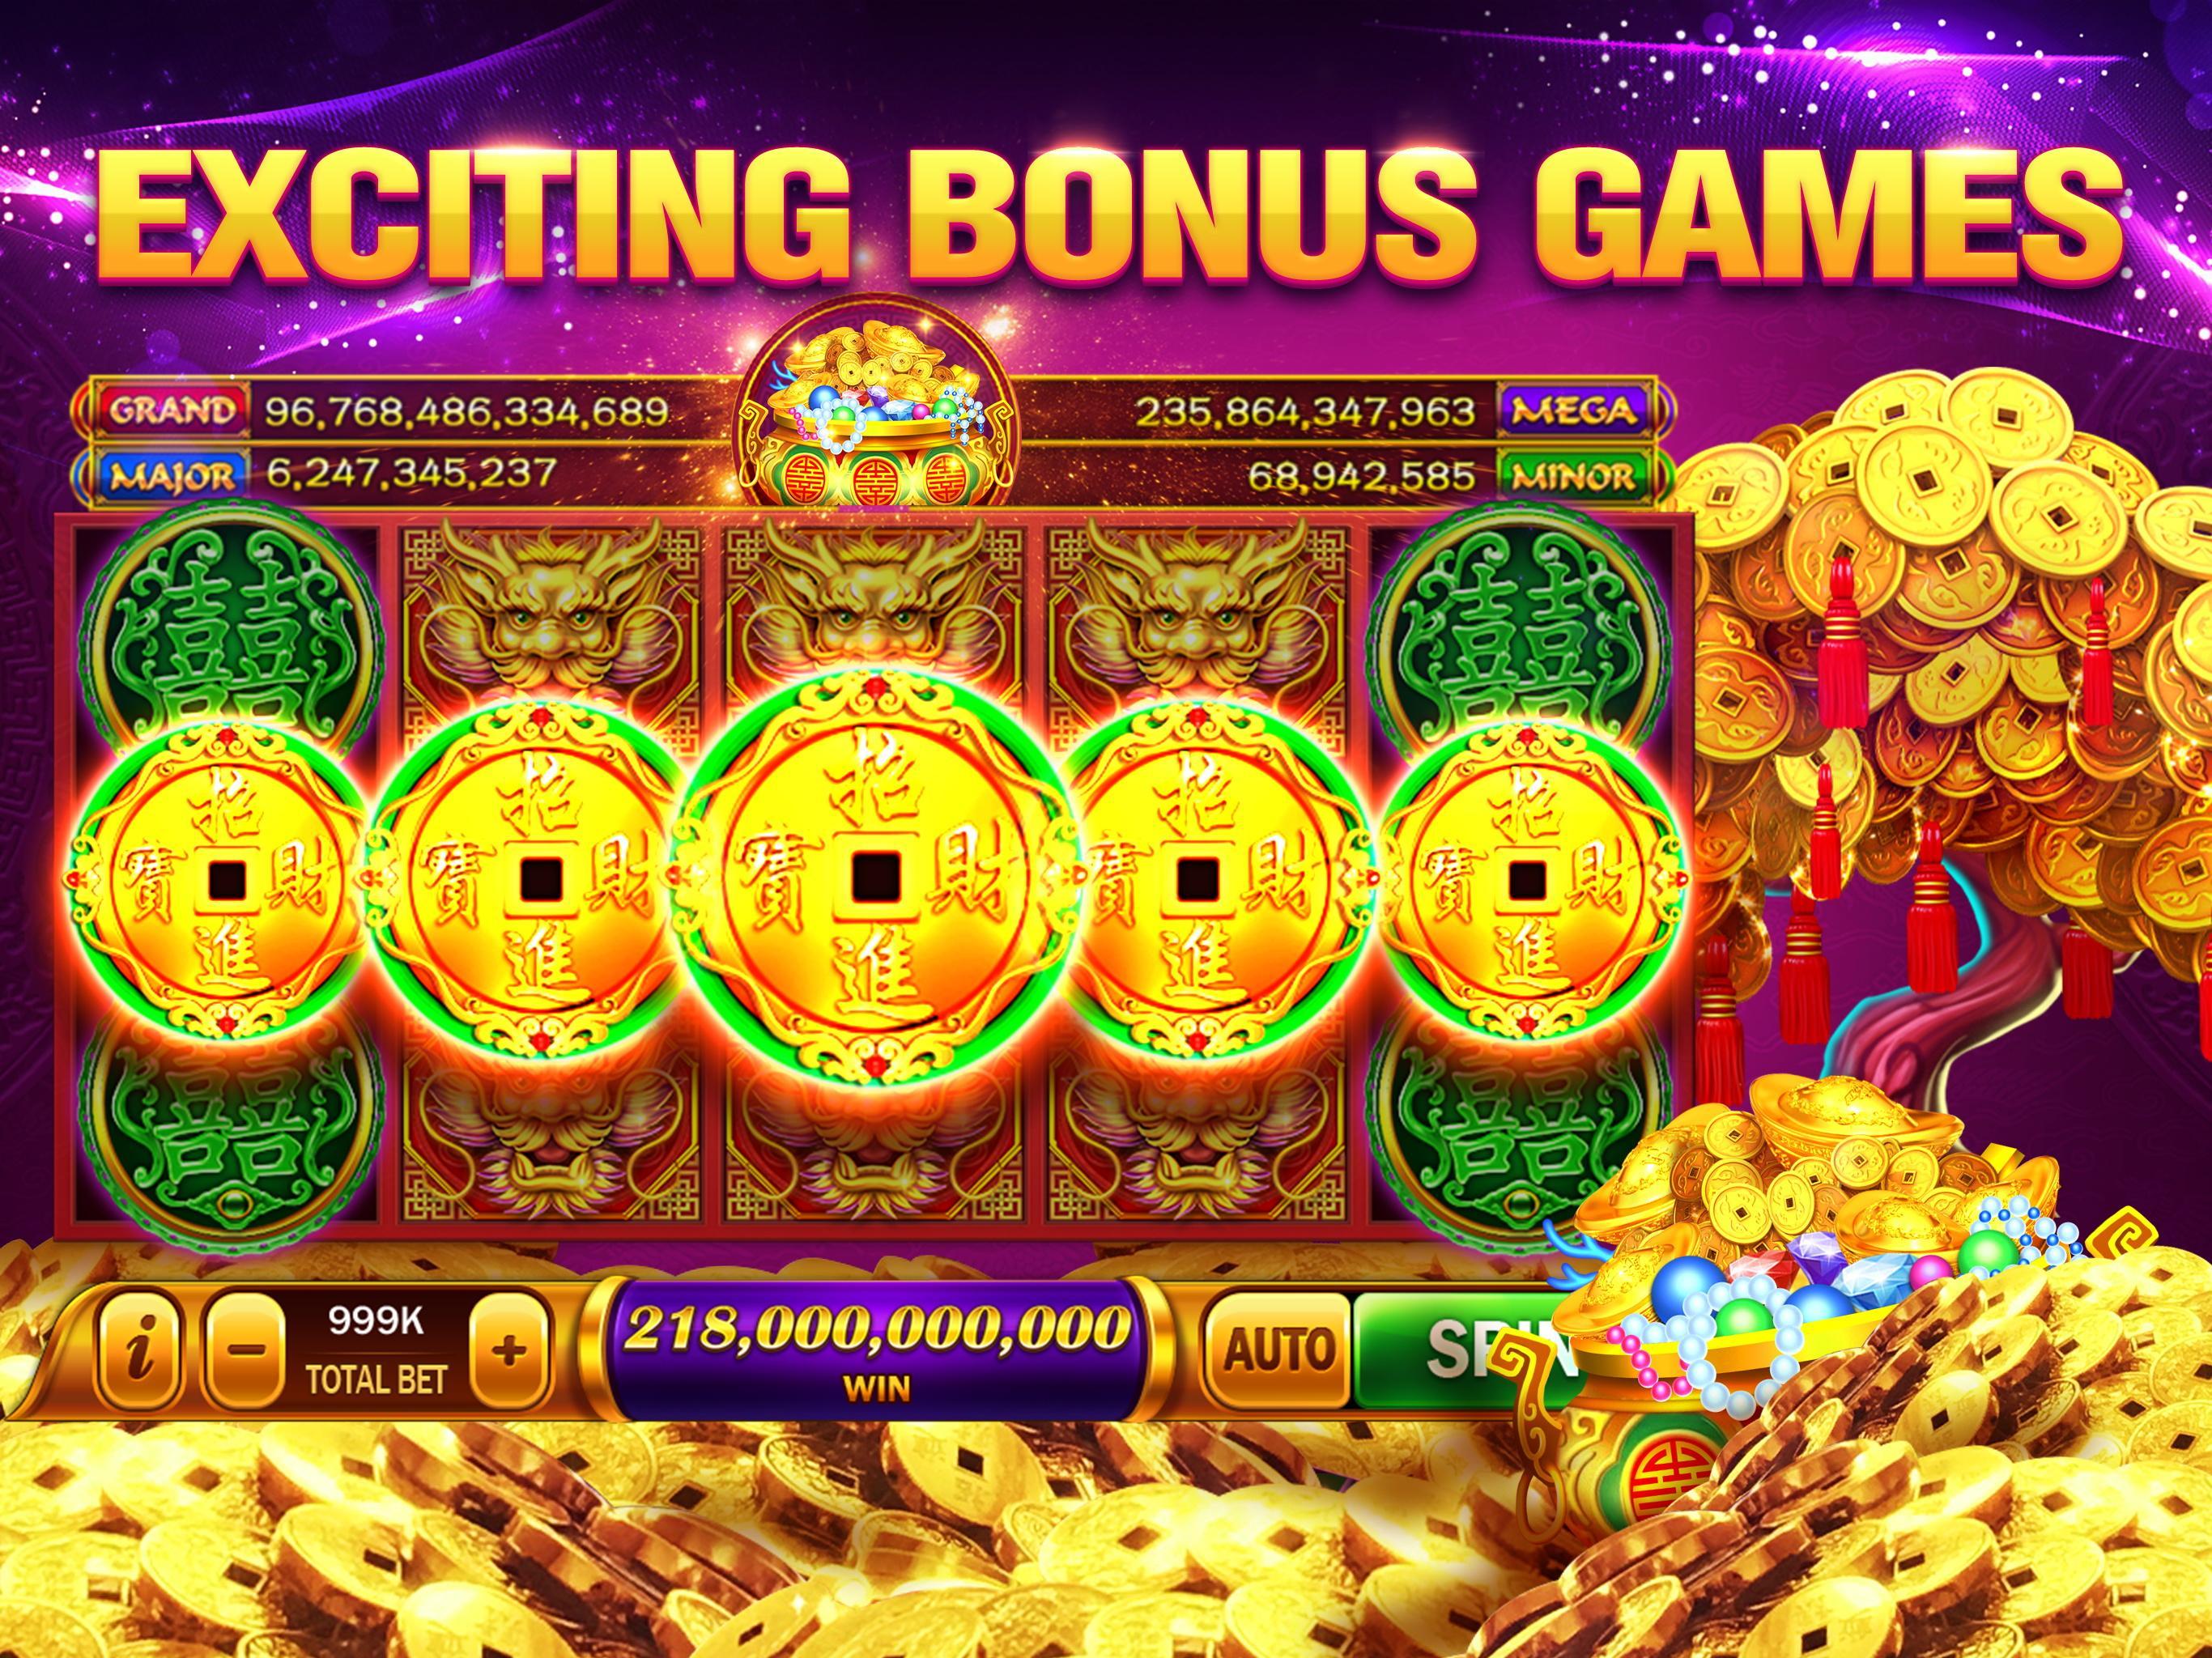 Online casino golden всех азартных играх казино